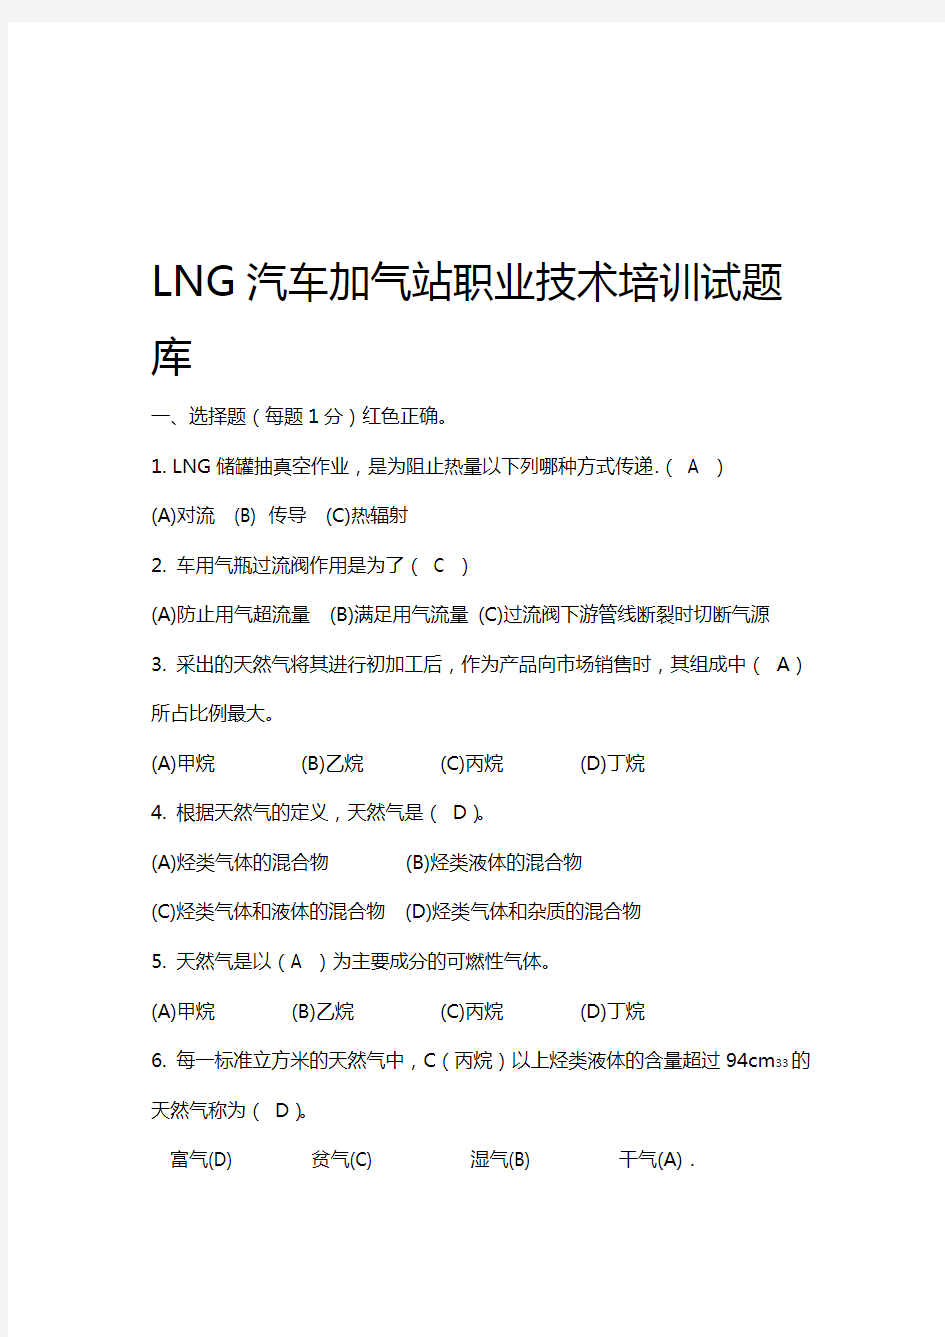 LNG汽车加气站职业技术培训试题库及答案